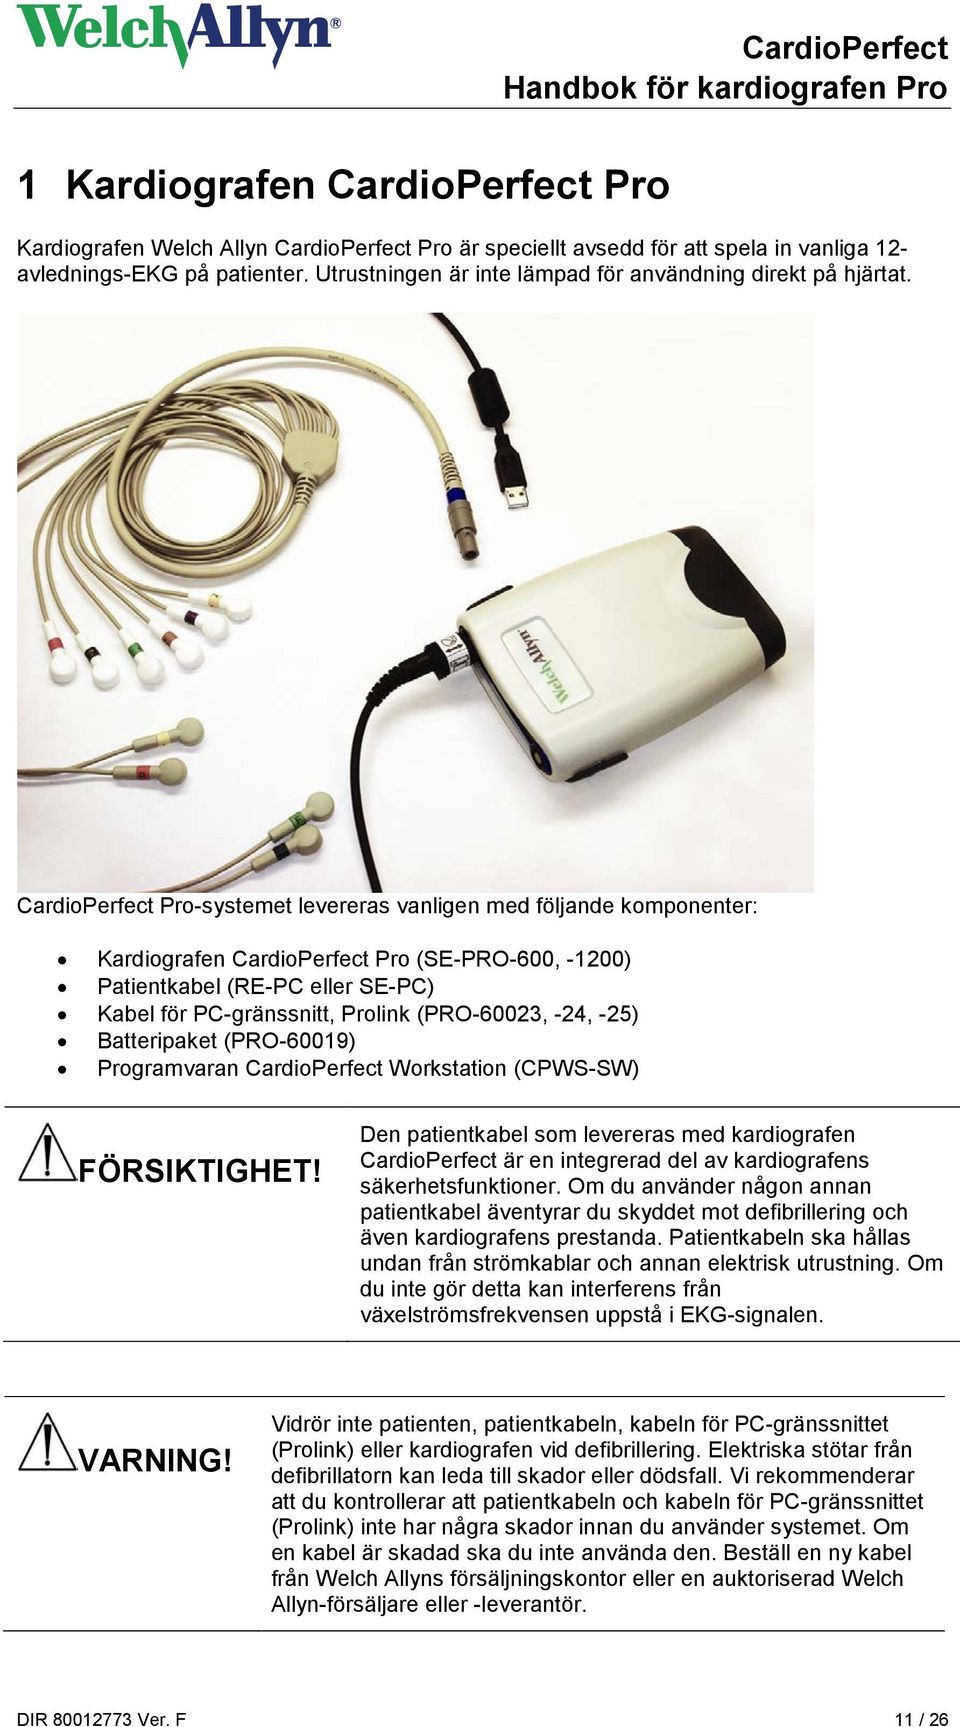 CardioPerfect Pro-systemet levereras vanligen med följande komponenter: Kardiografen CardioPerfect Pro (SE-PRO-600, -1200) Patientkabel (RE-PC eller SE-PC) Kabel för PC-gränssnitt, Prolink